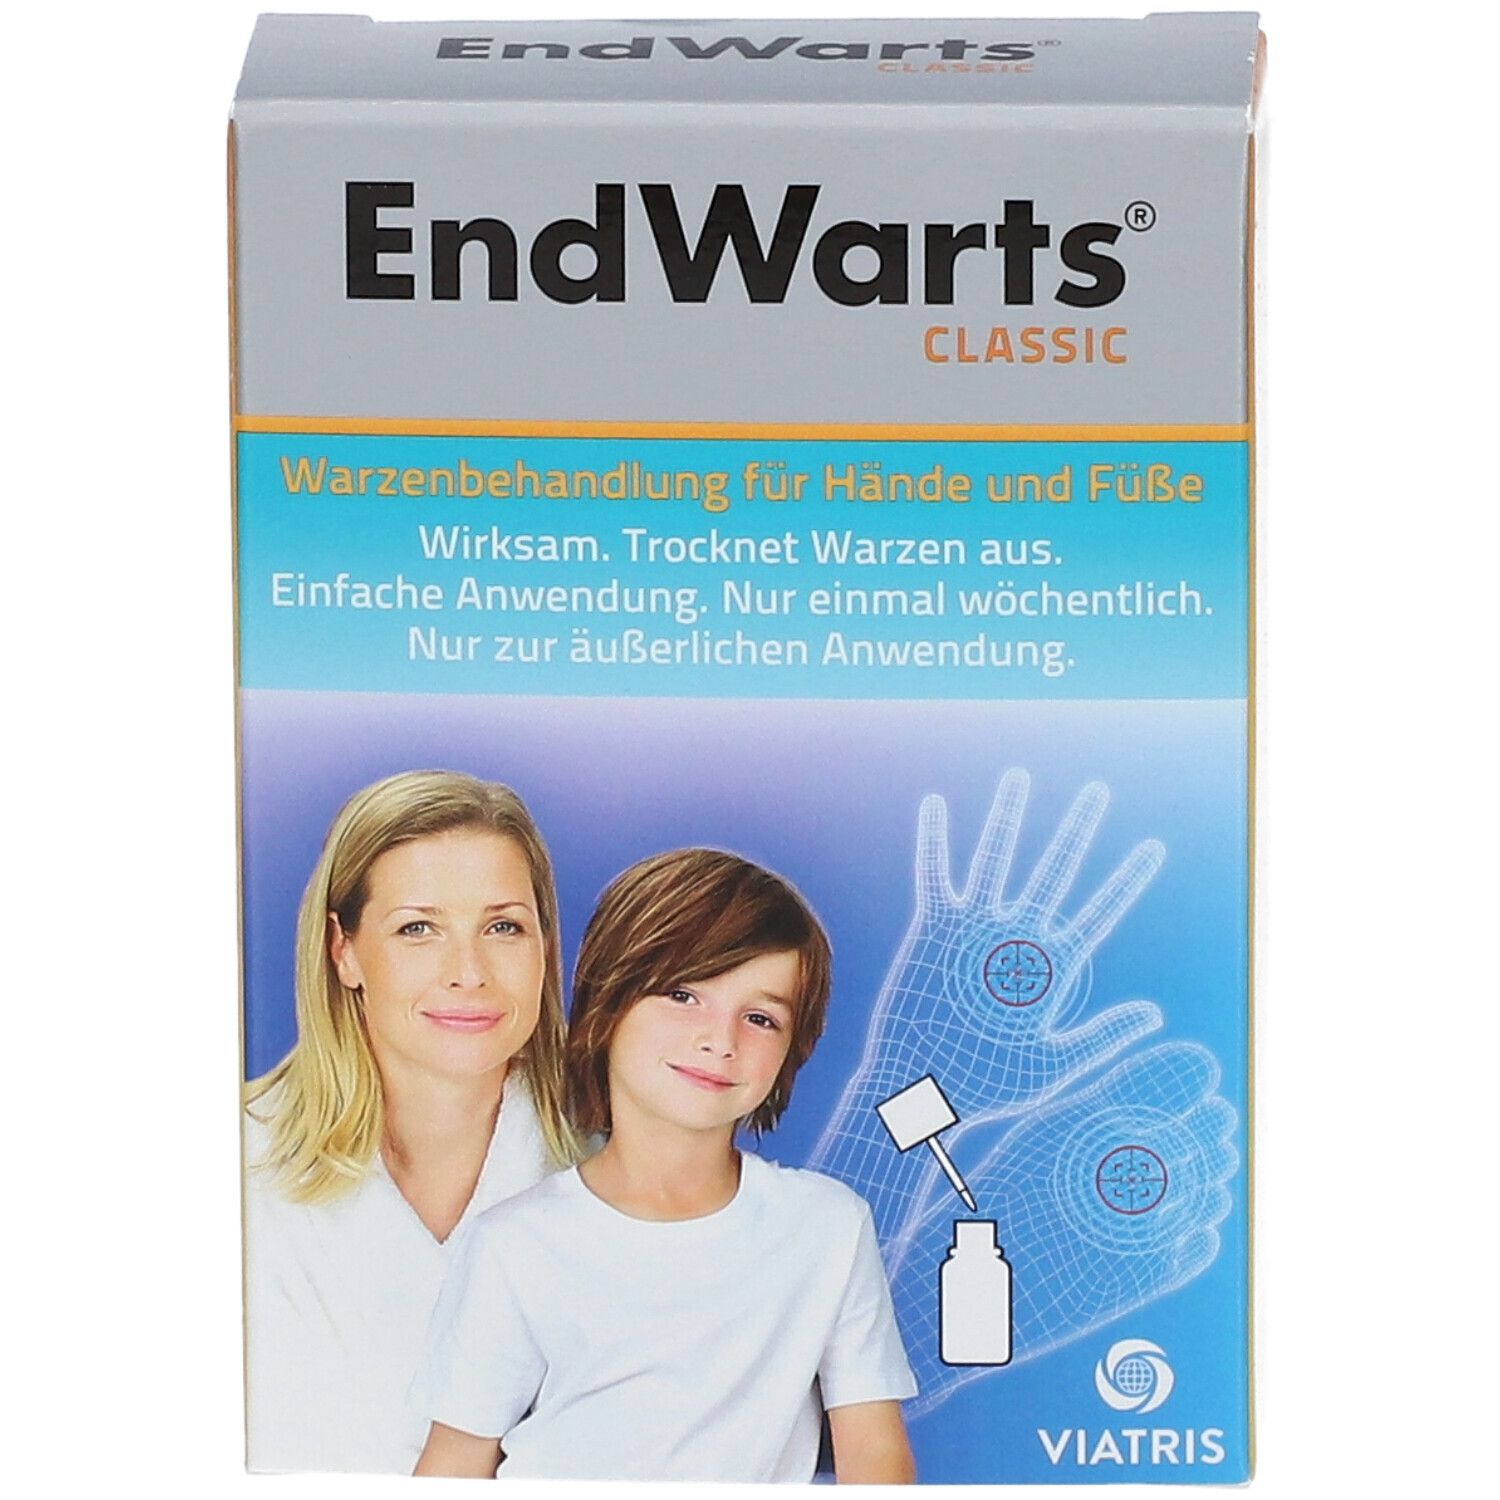 EndWarts CLASSIC: Lösung mit Ameisensäure gegen Warzen und Dornwarzen, Warzenbehandlung für Hände und Füße